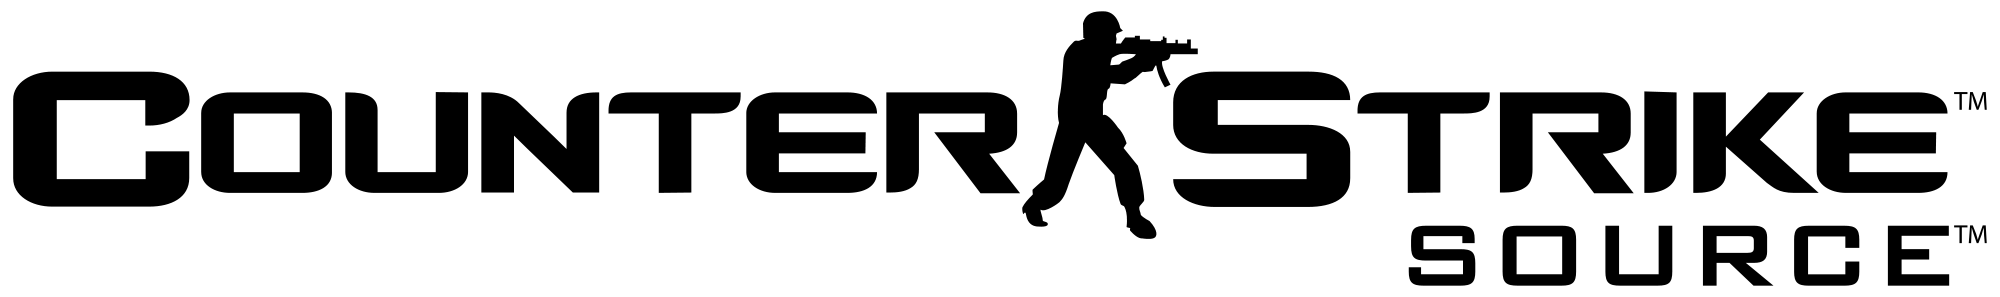 Counter Strike Logo PNG Image